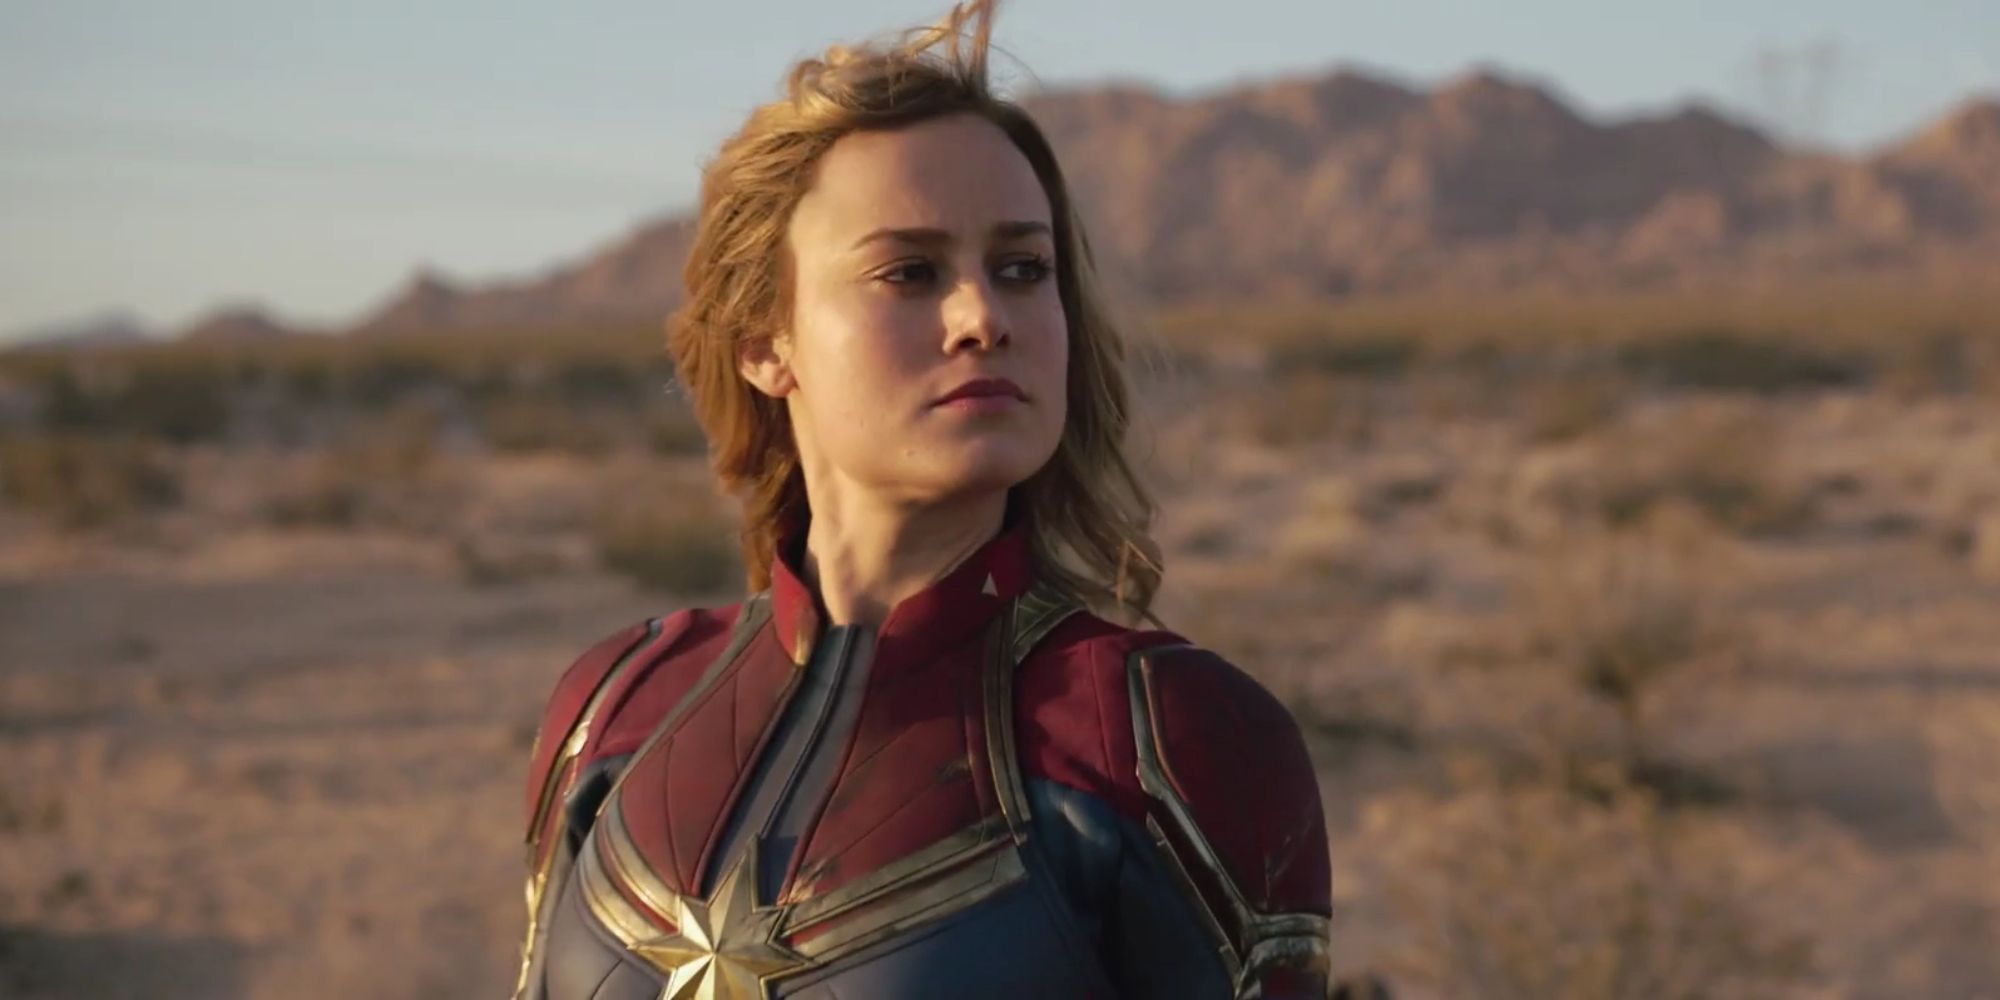 Brie Larson looking heroic in Captain Marvel